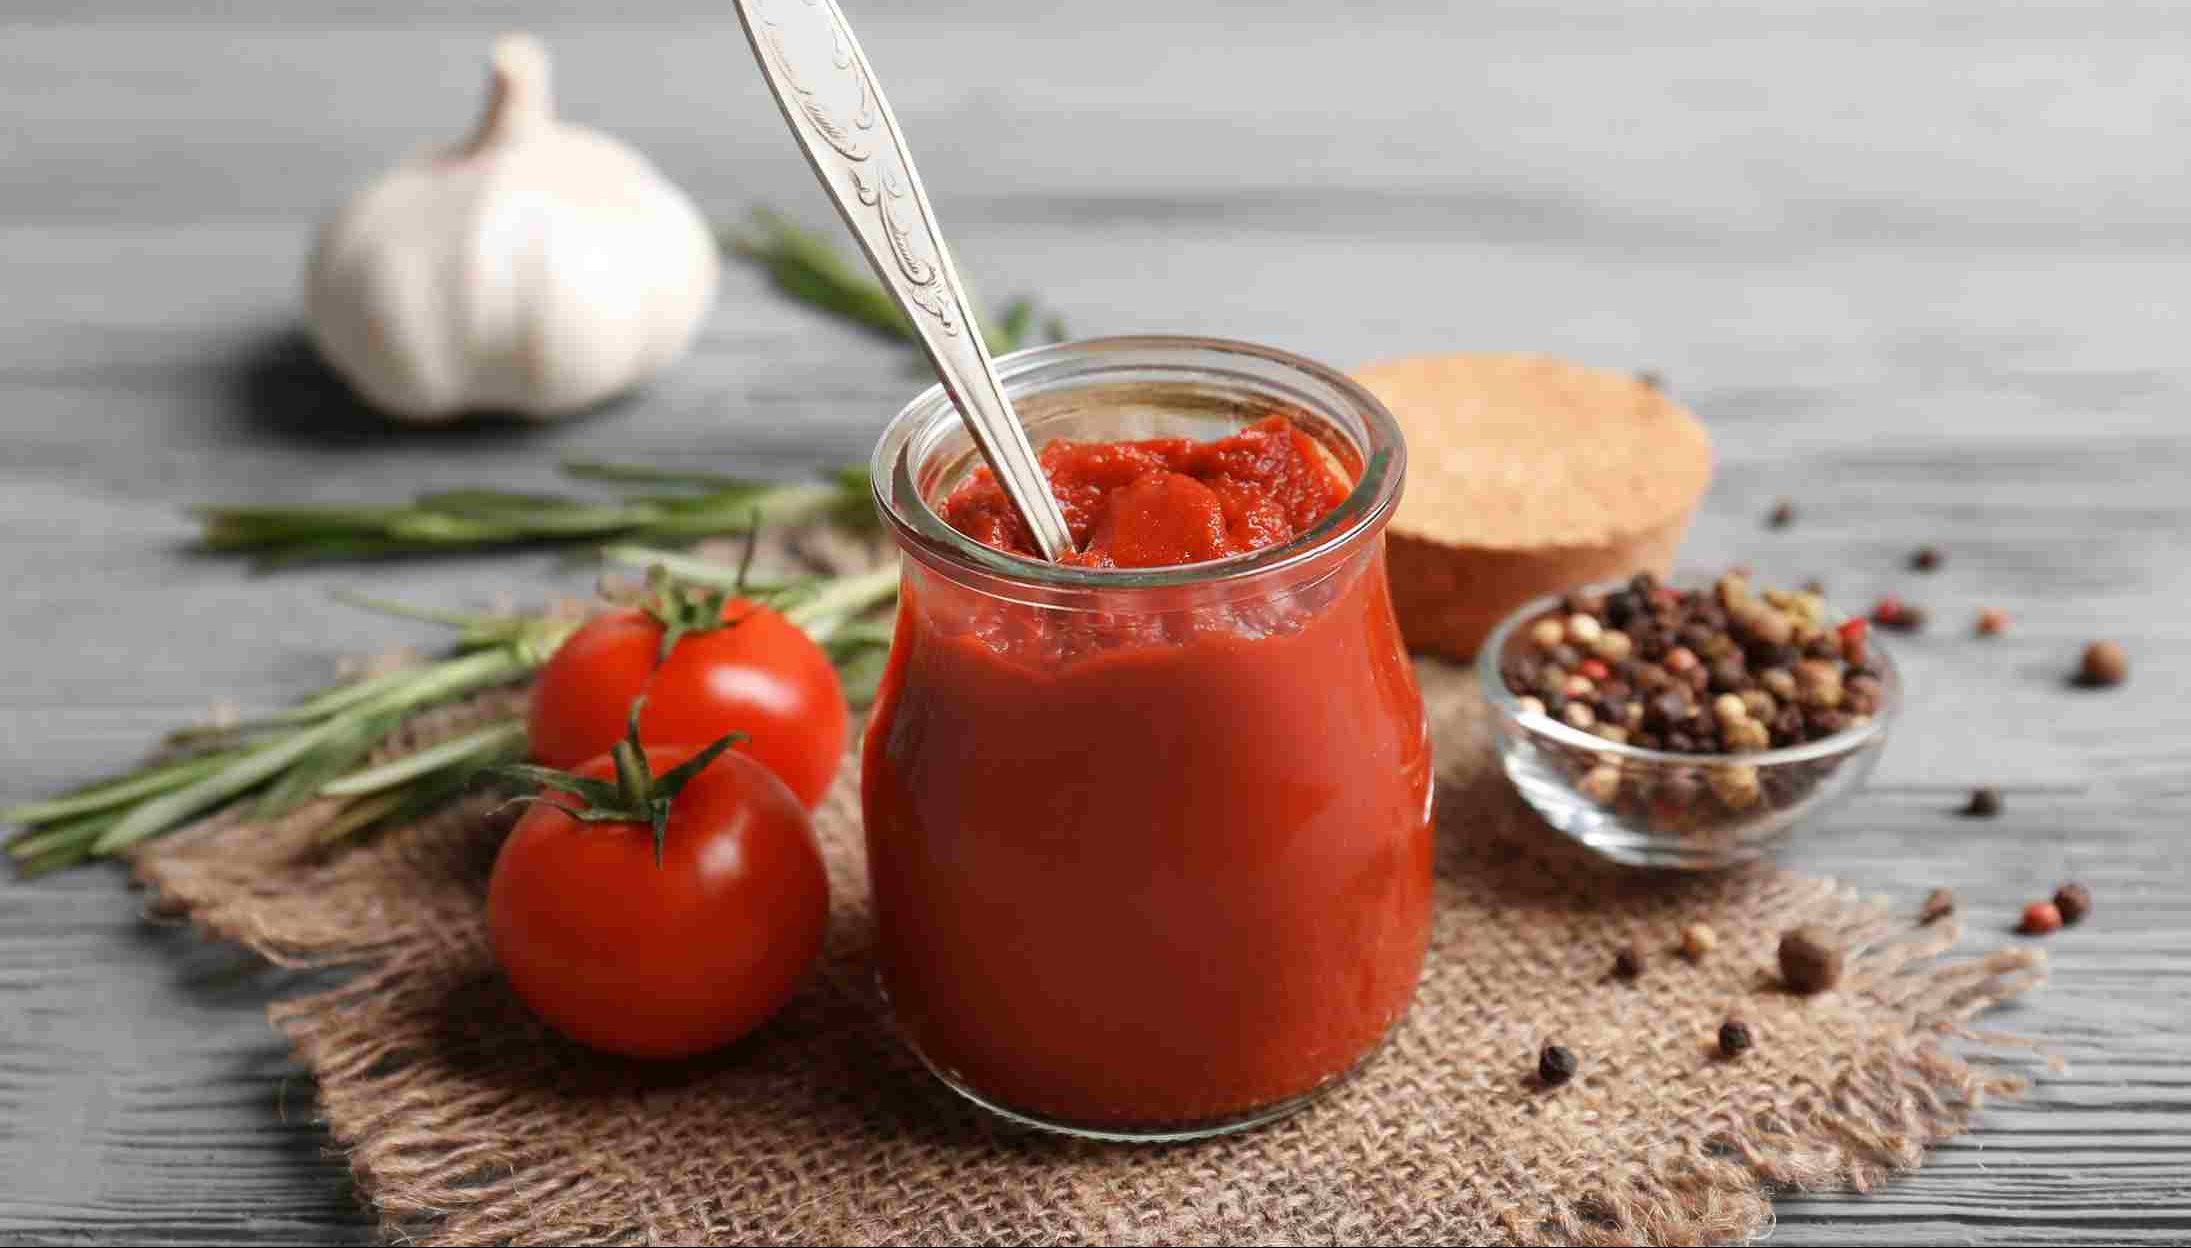 Tomato paste in a glass jar